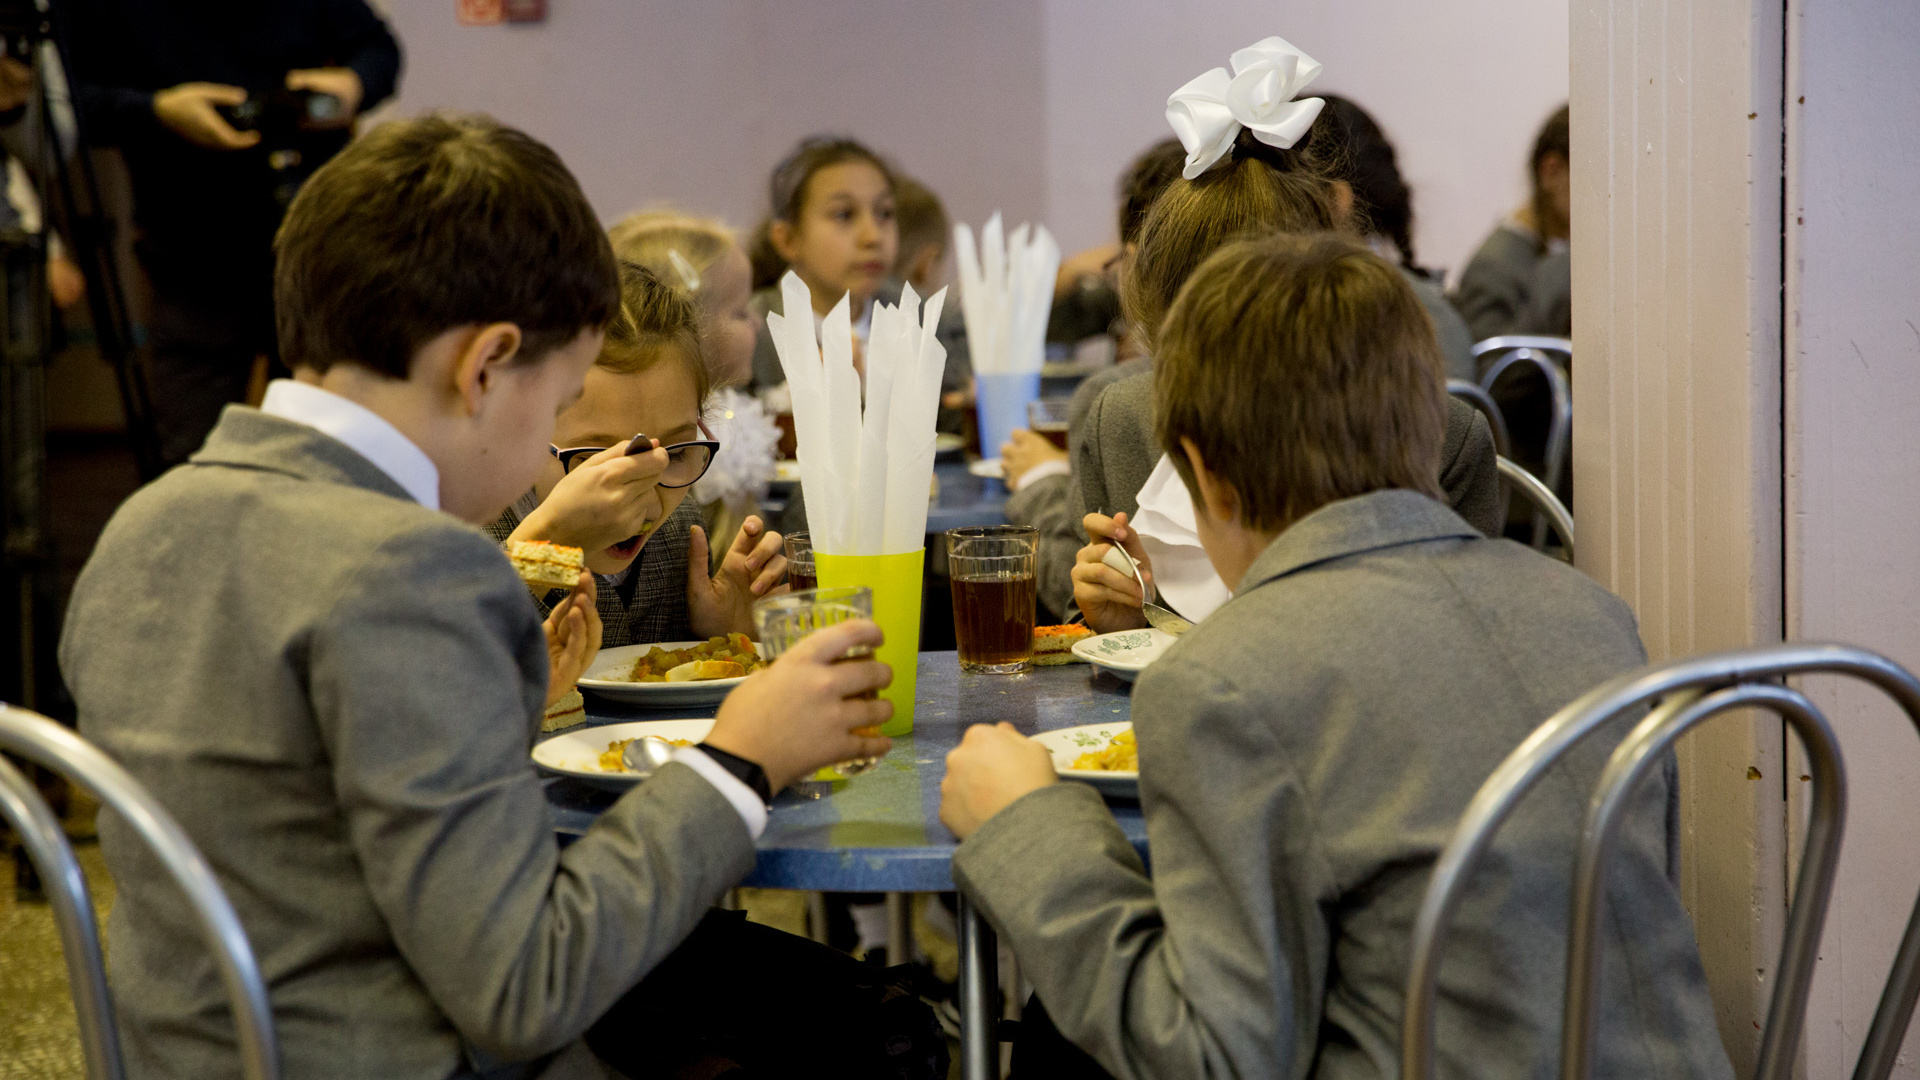 В Ярославле перекраивают систему питания в школах: коротко объясняем, что происходит